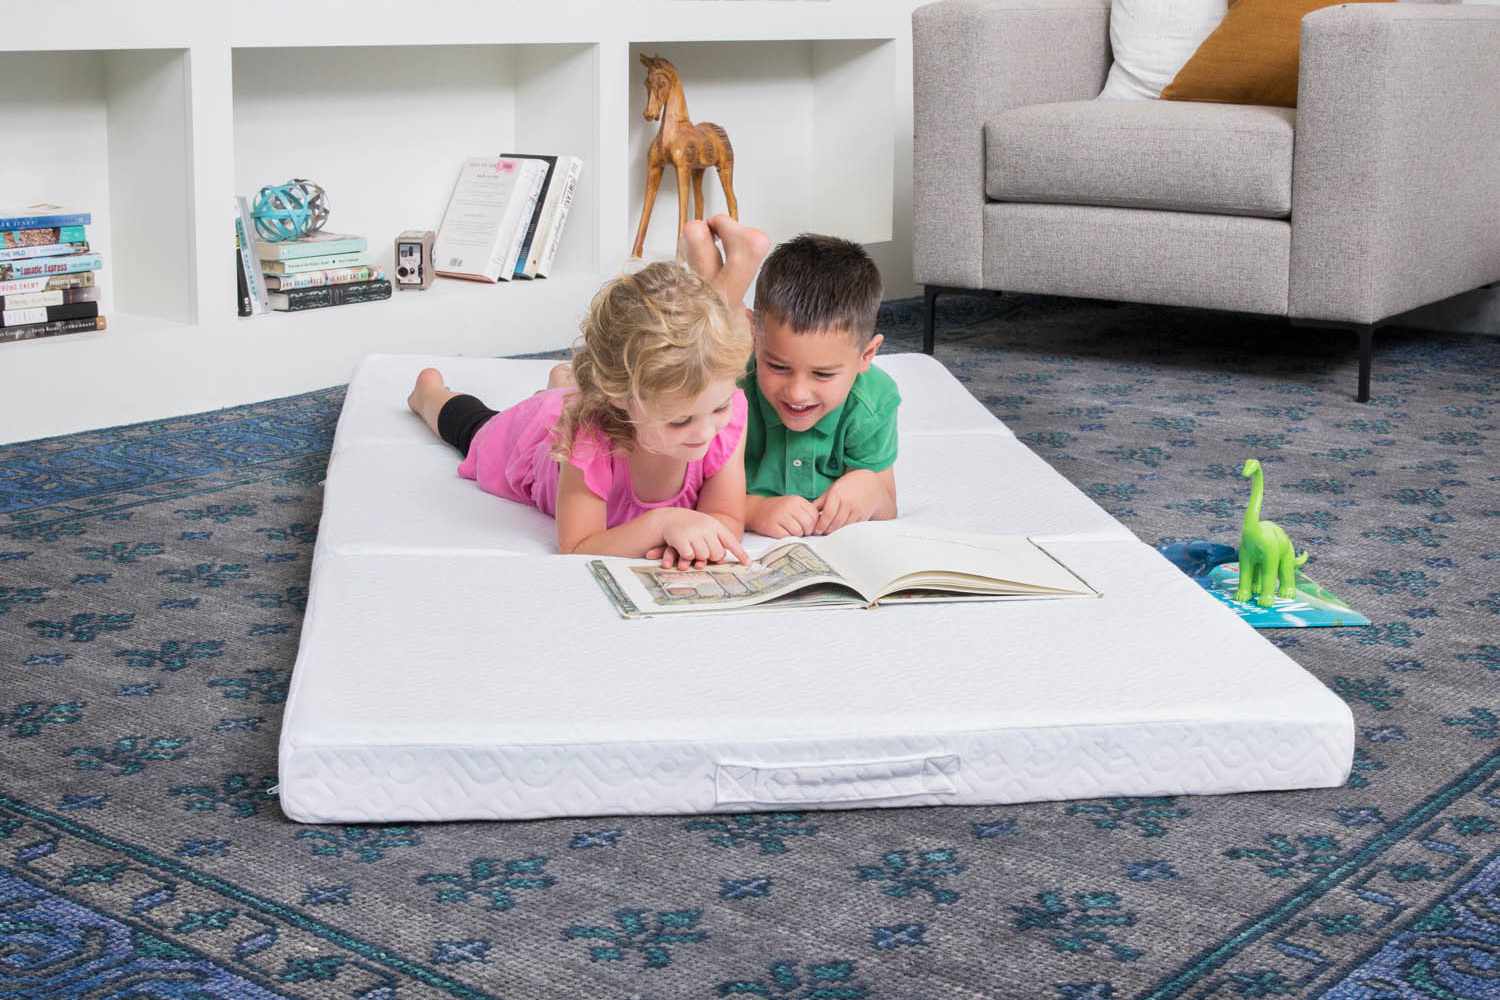 Two kids on a foam sleeping mat